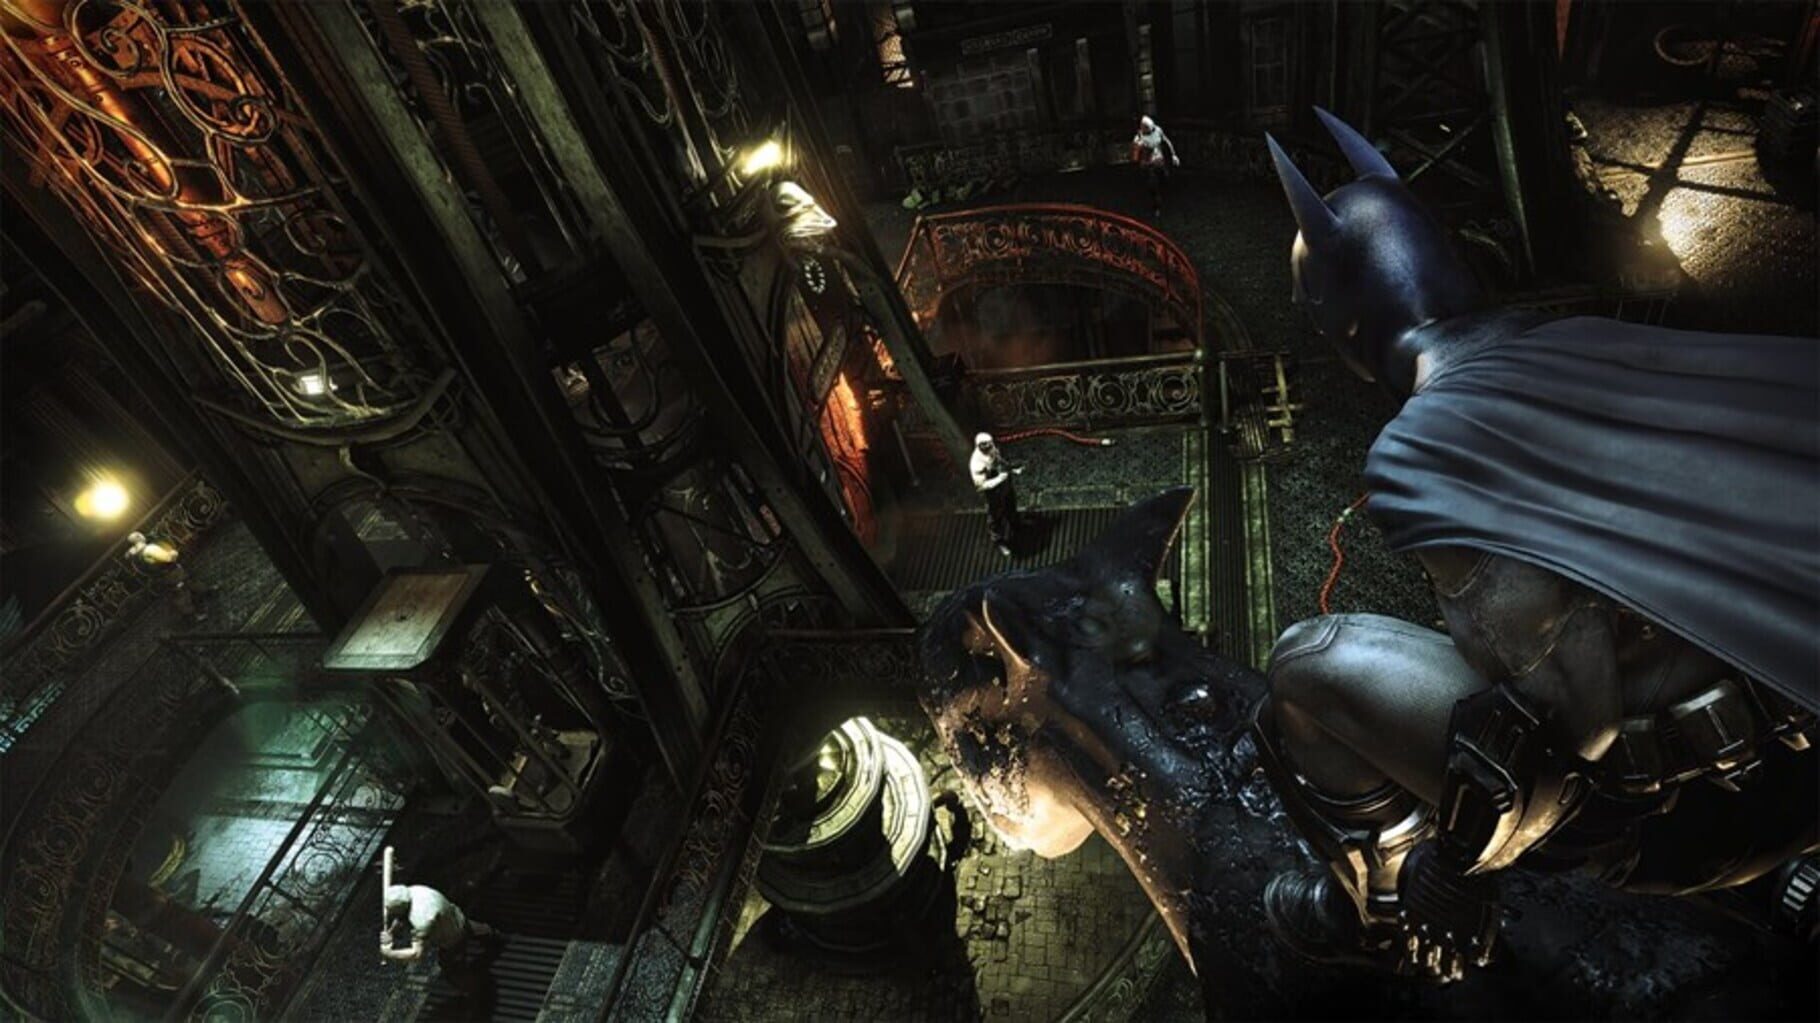 Captura de pantalla - Batman: Arkham City - Ultimate Edition